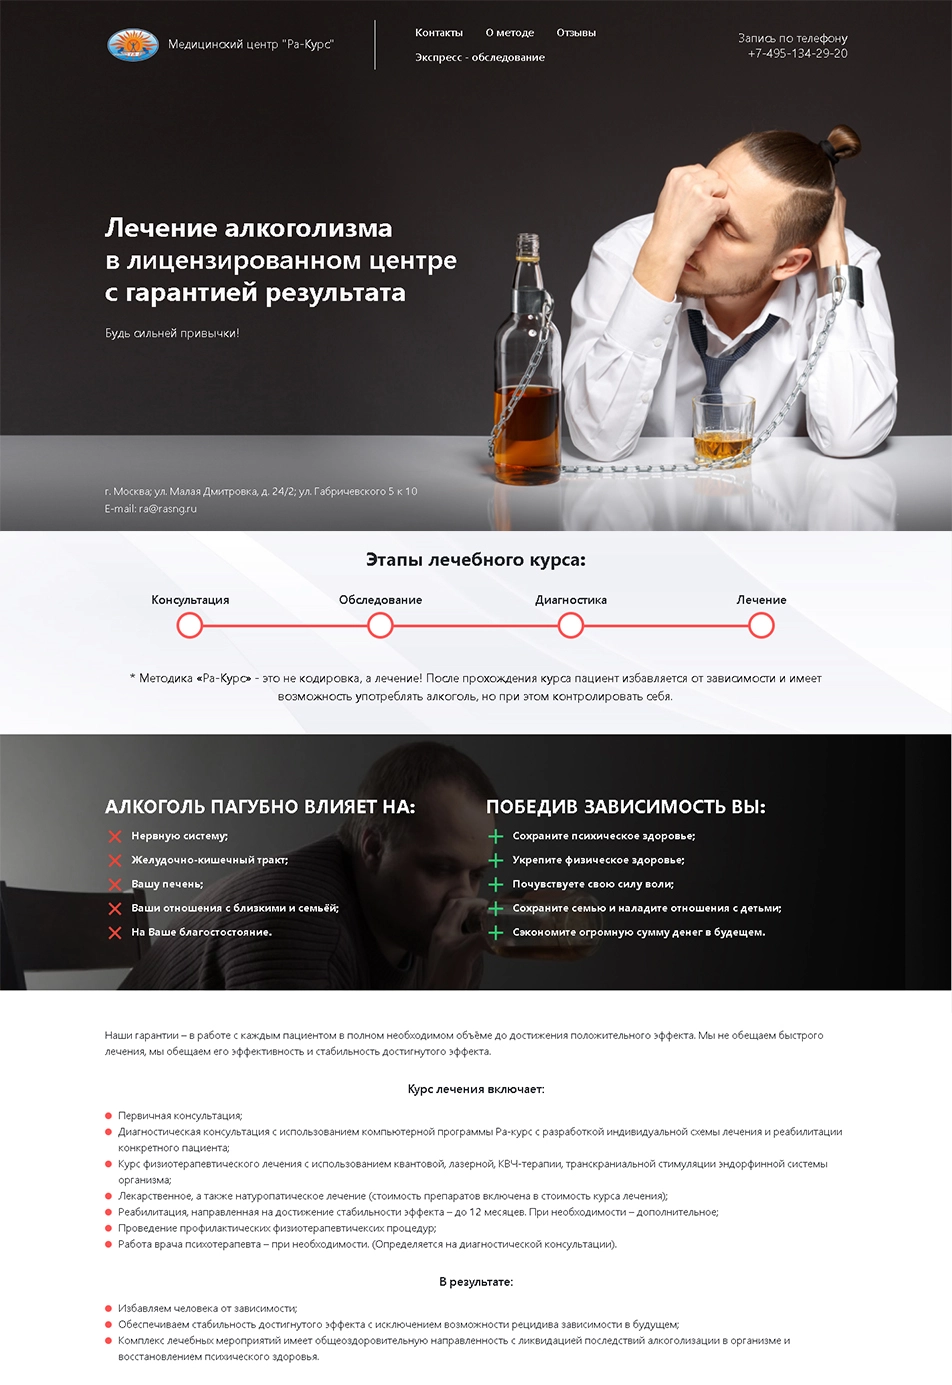 Медицинский сайт - Лечение алкогольной зависимости г. Москва